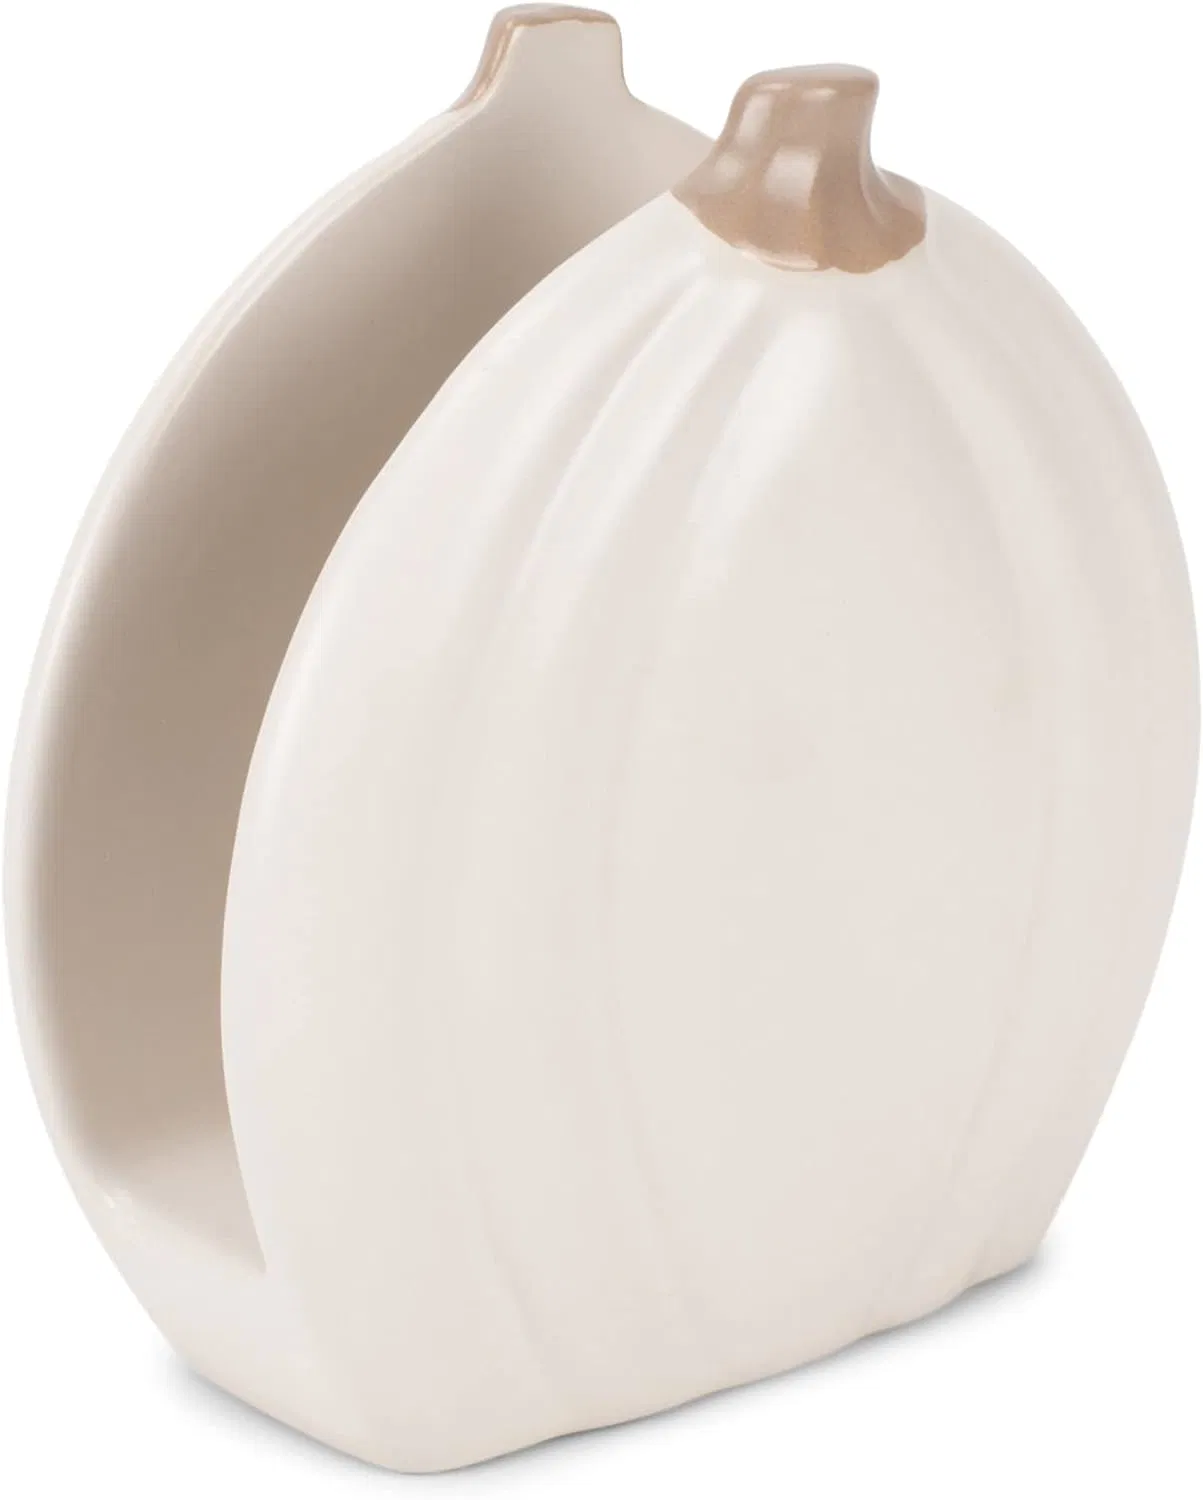 Suporte de abóbora em cerâmica em forma de abóbora branca personalizado para venda